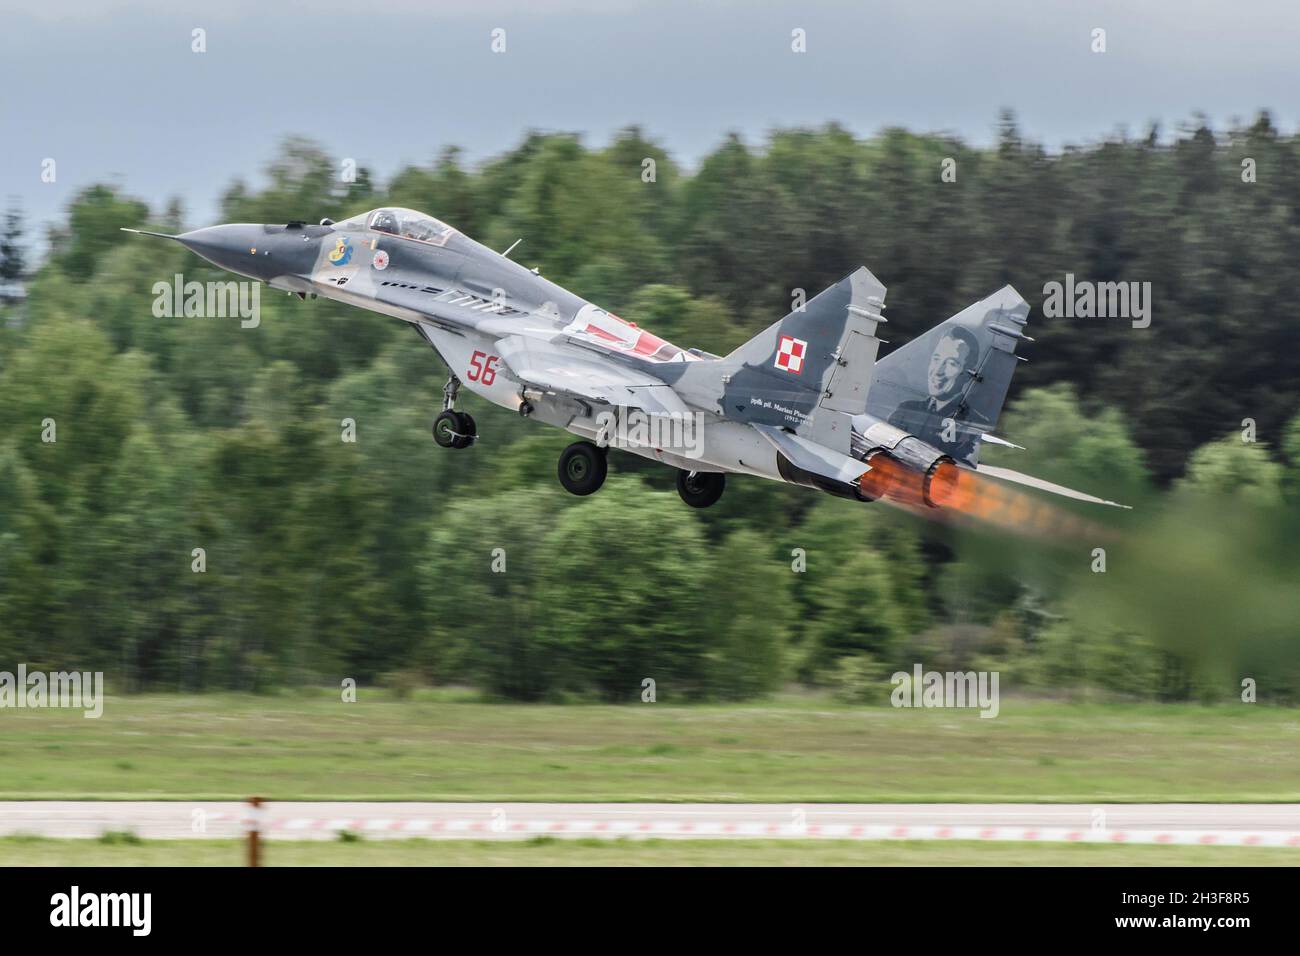 Mińsk Mazowiecki, Polonia - 10 maggio 2014: Il jet militare polacco Mig-29 decollo dalla pista durante la base aerea EPMM giorno di apertura con postbruciatore Foto Stock